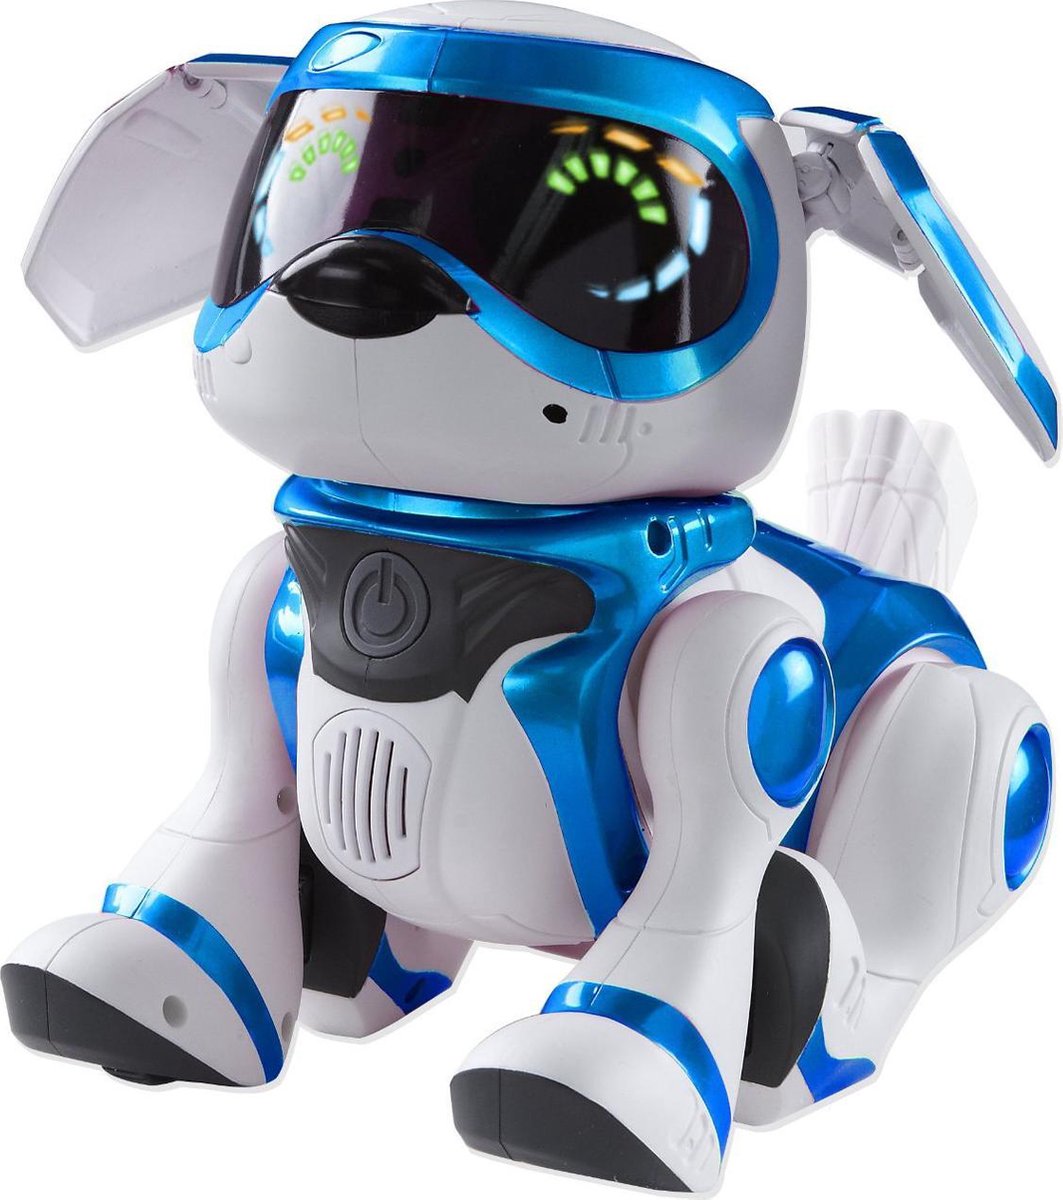 munitie knijpen Belachelijk Teksta Robot Puppy - Elektronisch Speelfiguur | bol.com